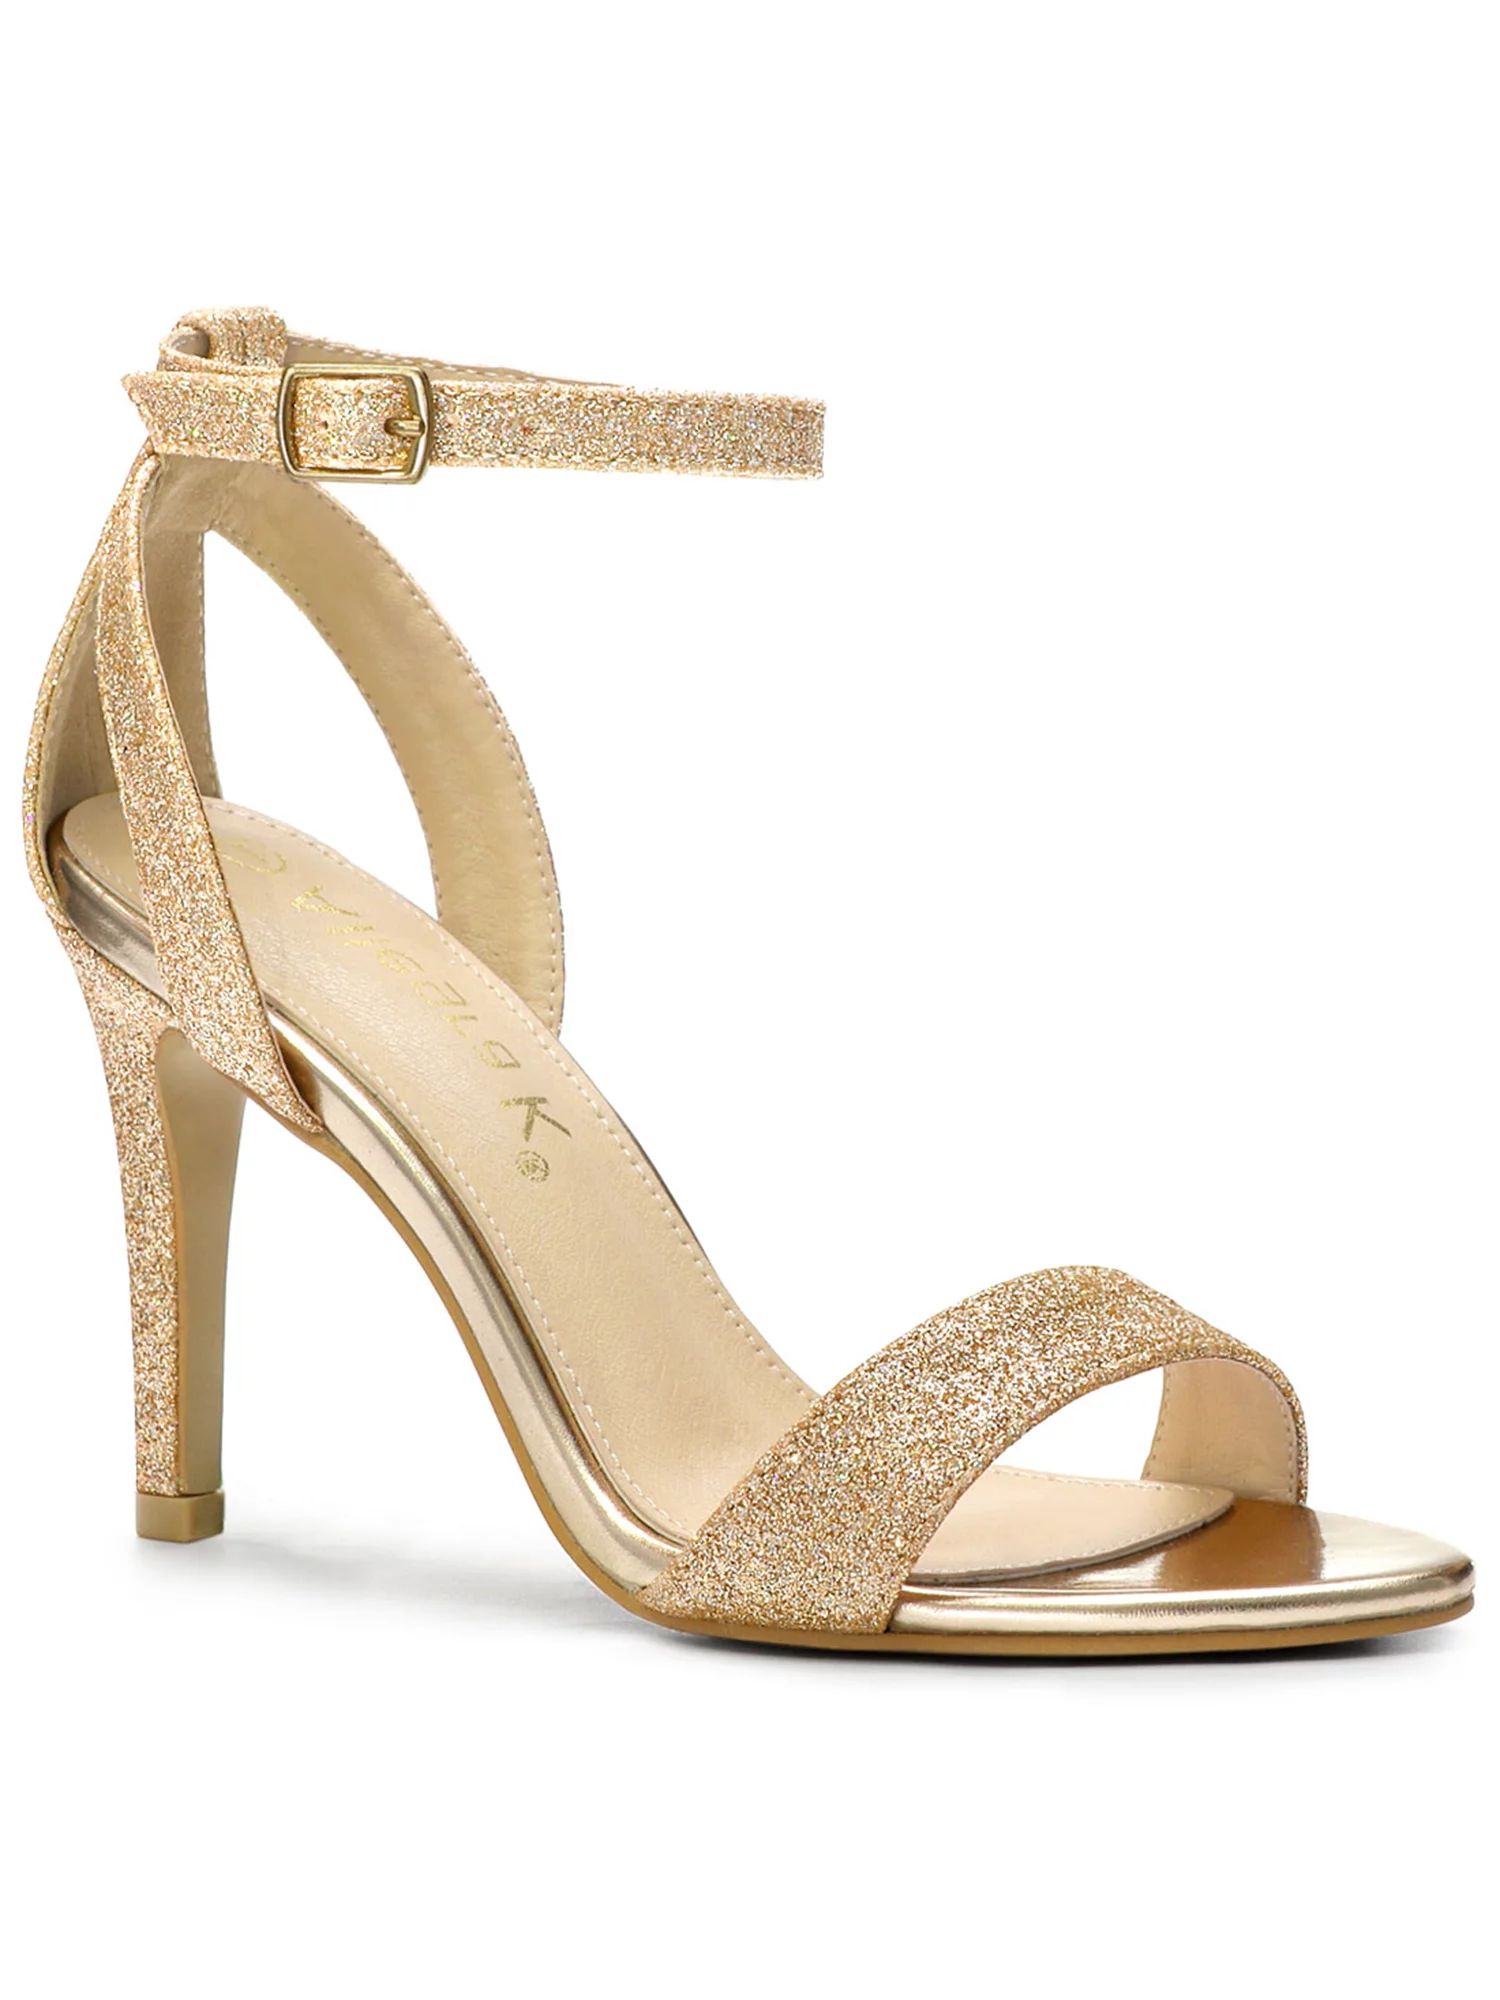 Allegra K Women's Sandals High Stiletto Heels Glitter Ankle Strap Sandals | Walmart (US)